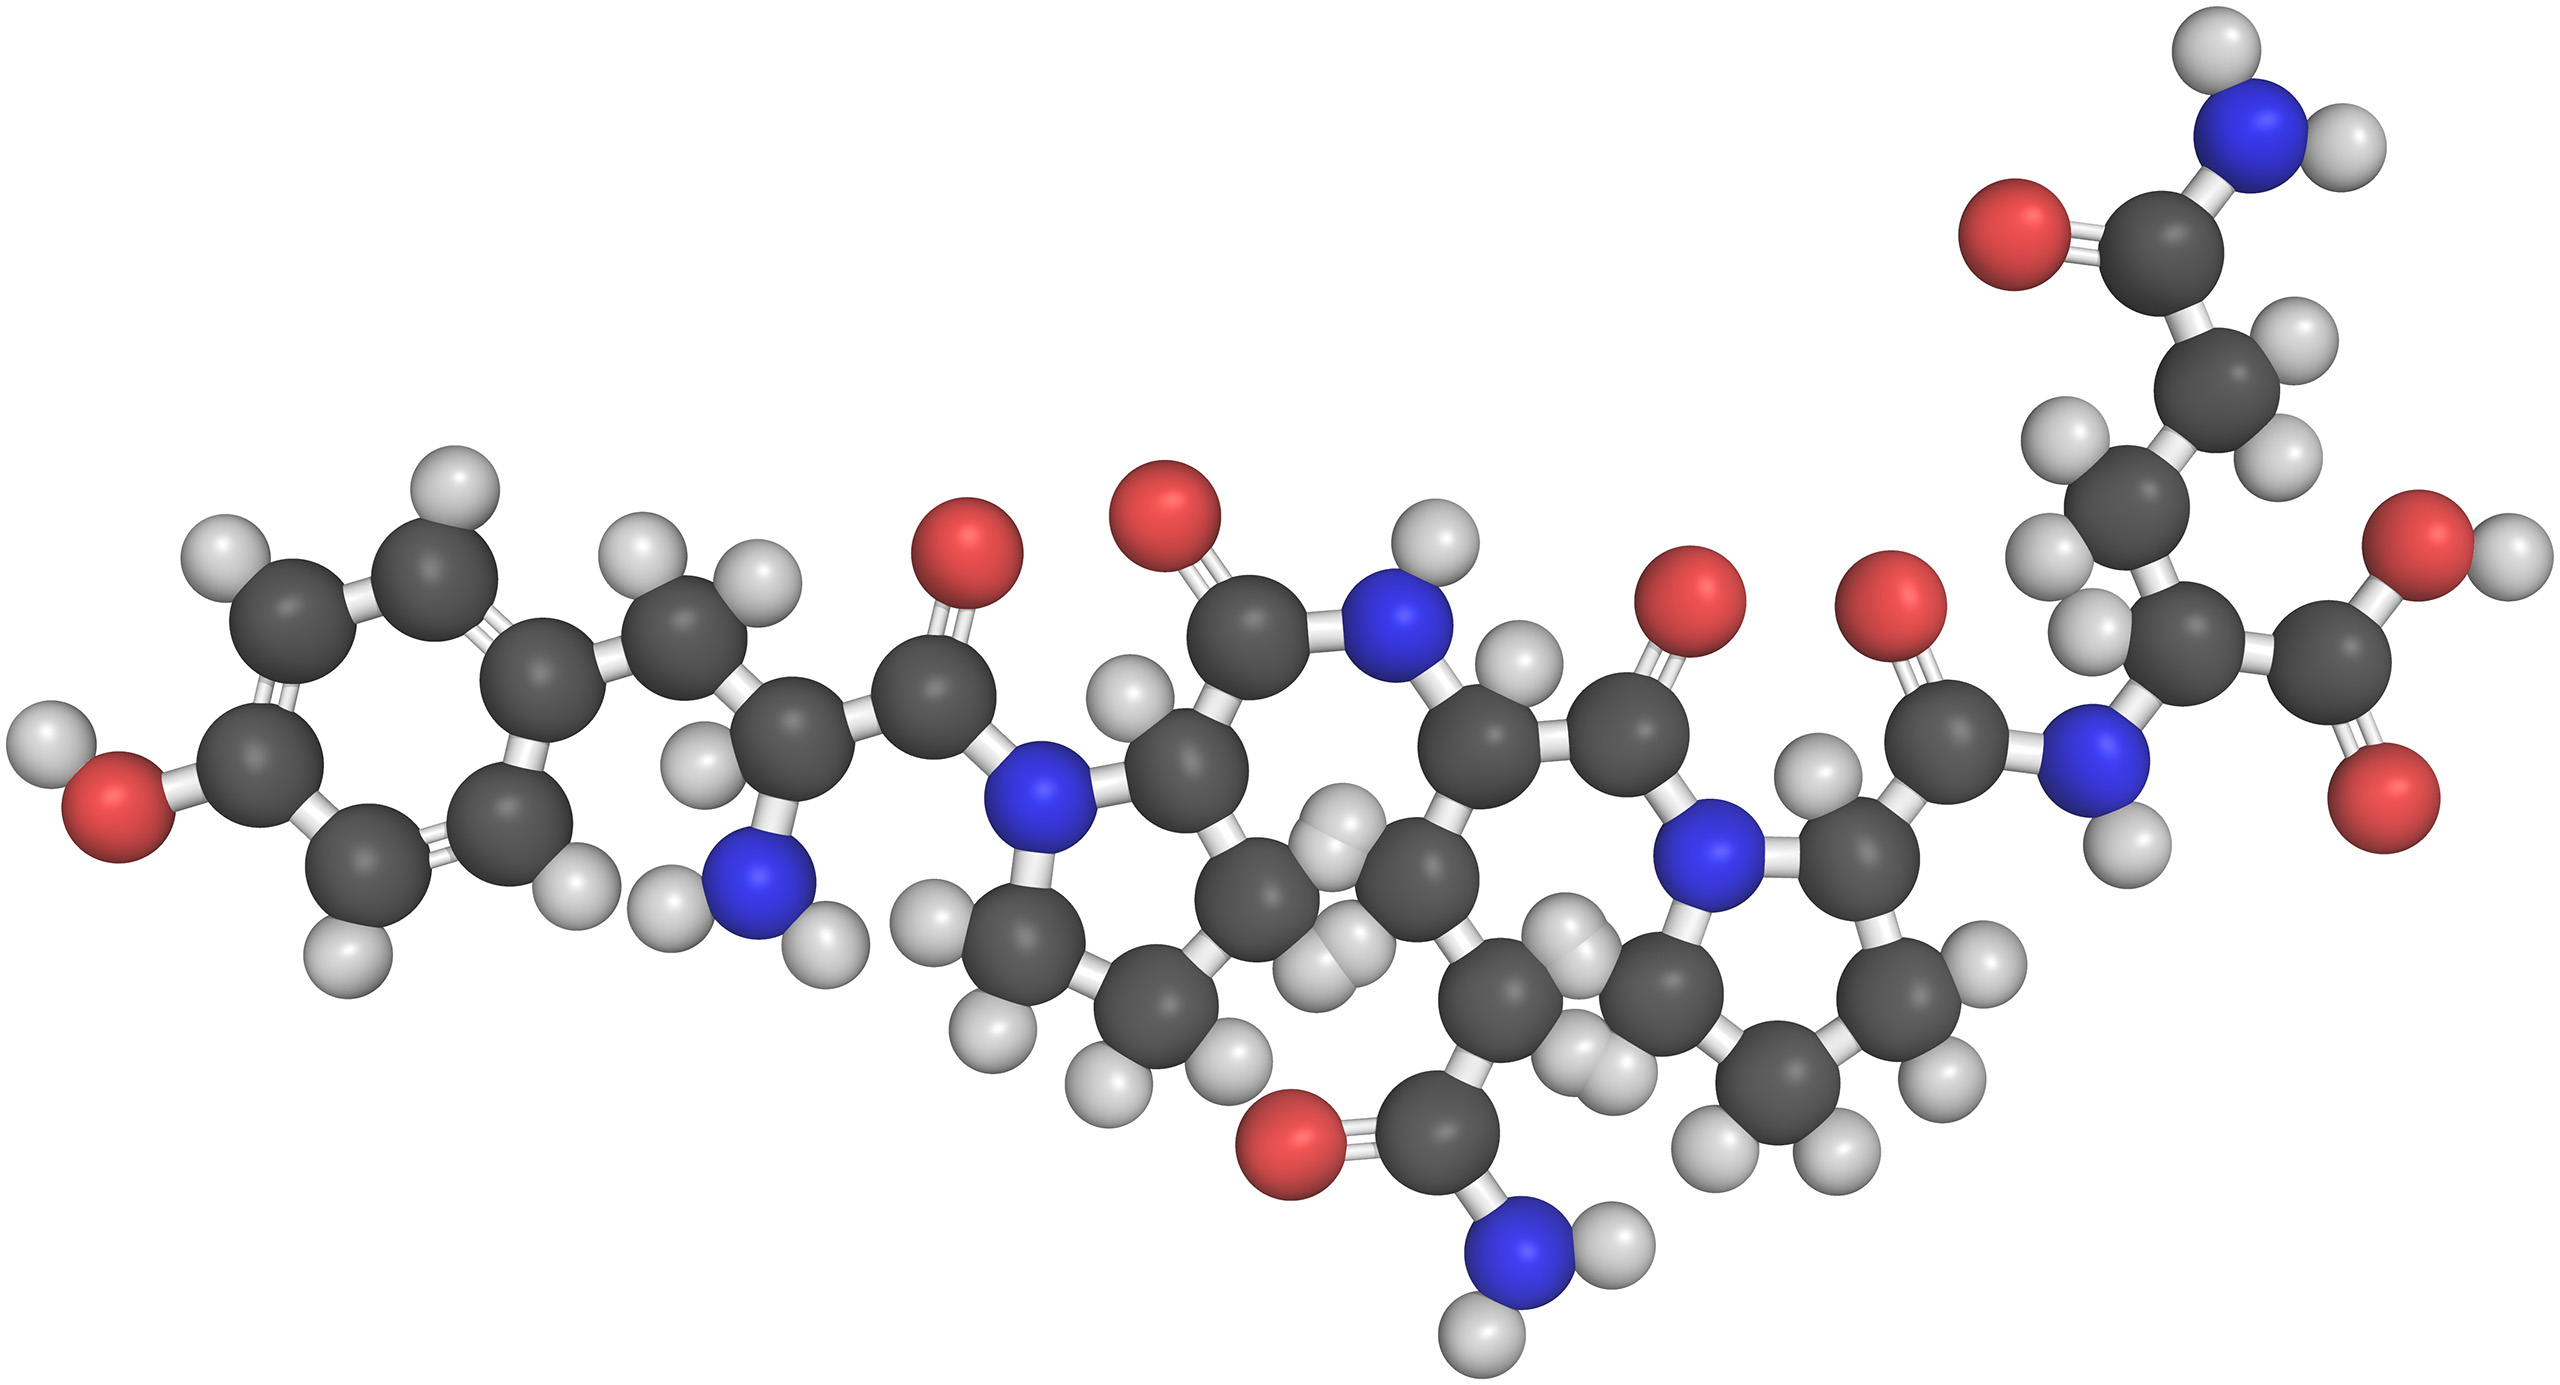 Vue 3D de la structure chimique des gliadines